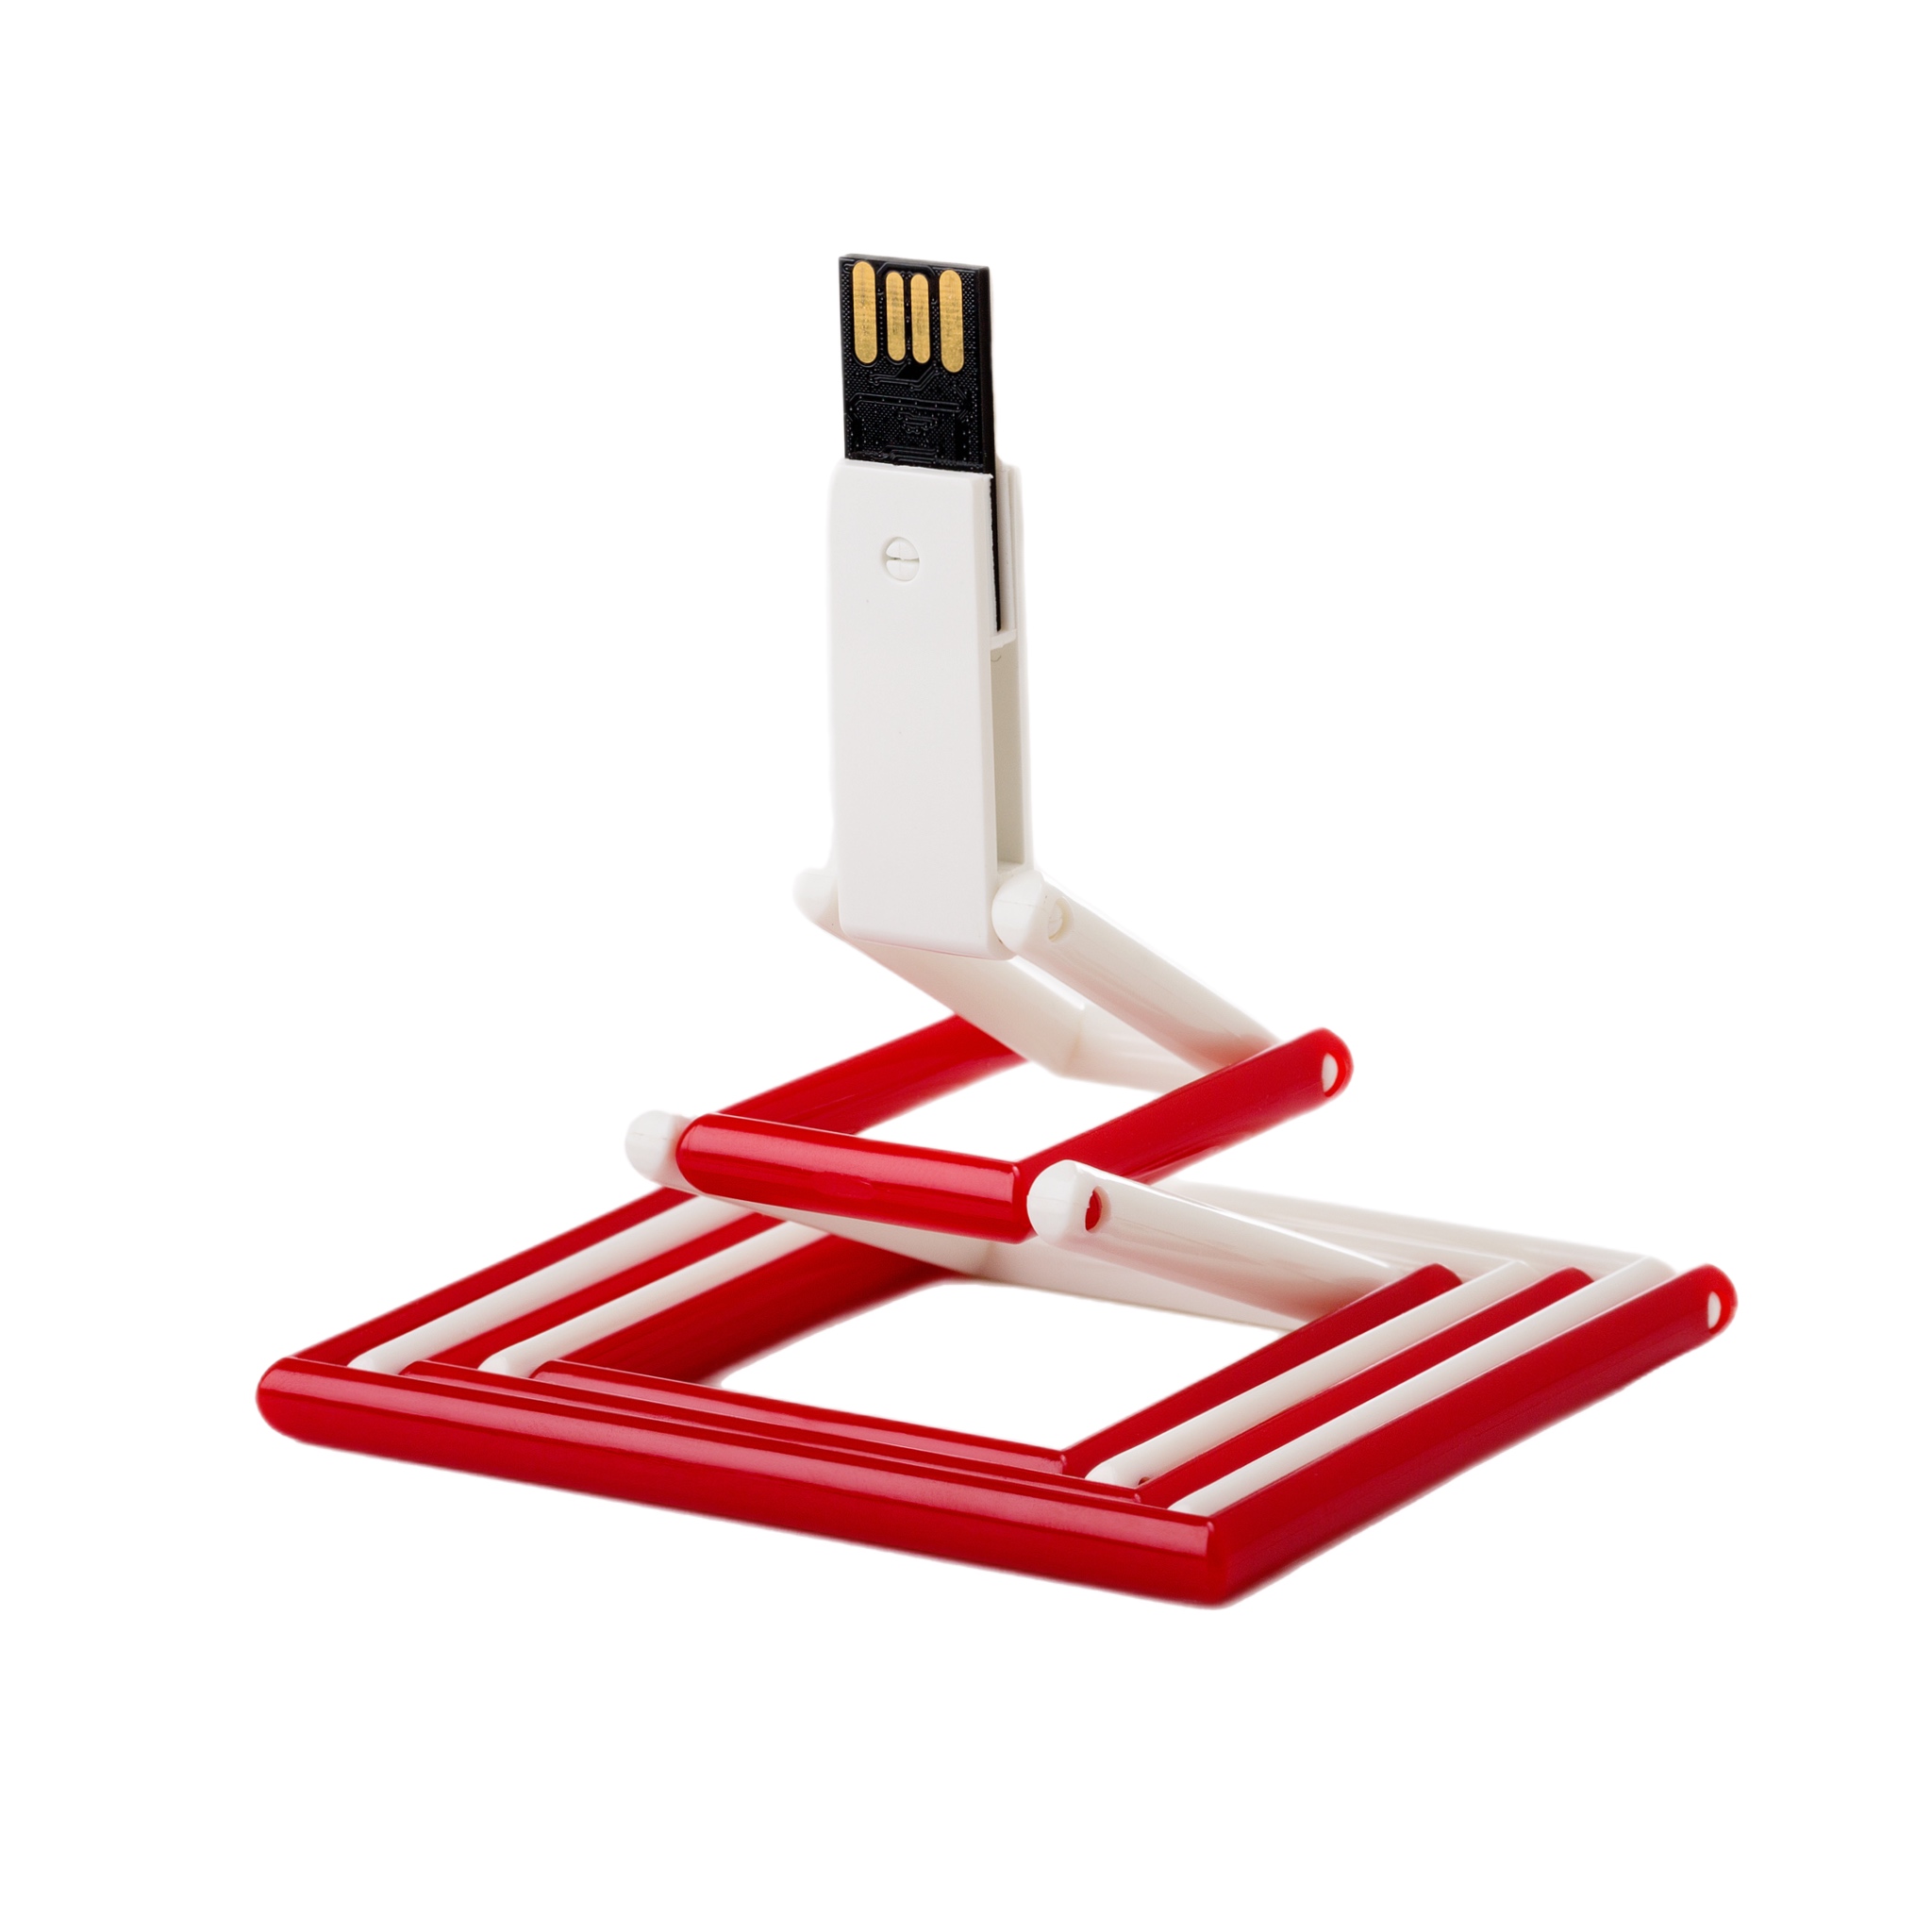 USB-флешка модель 119, (USB 2.0),  объем памяти 512 MB, цвет белый/красный